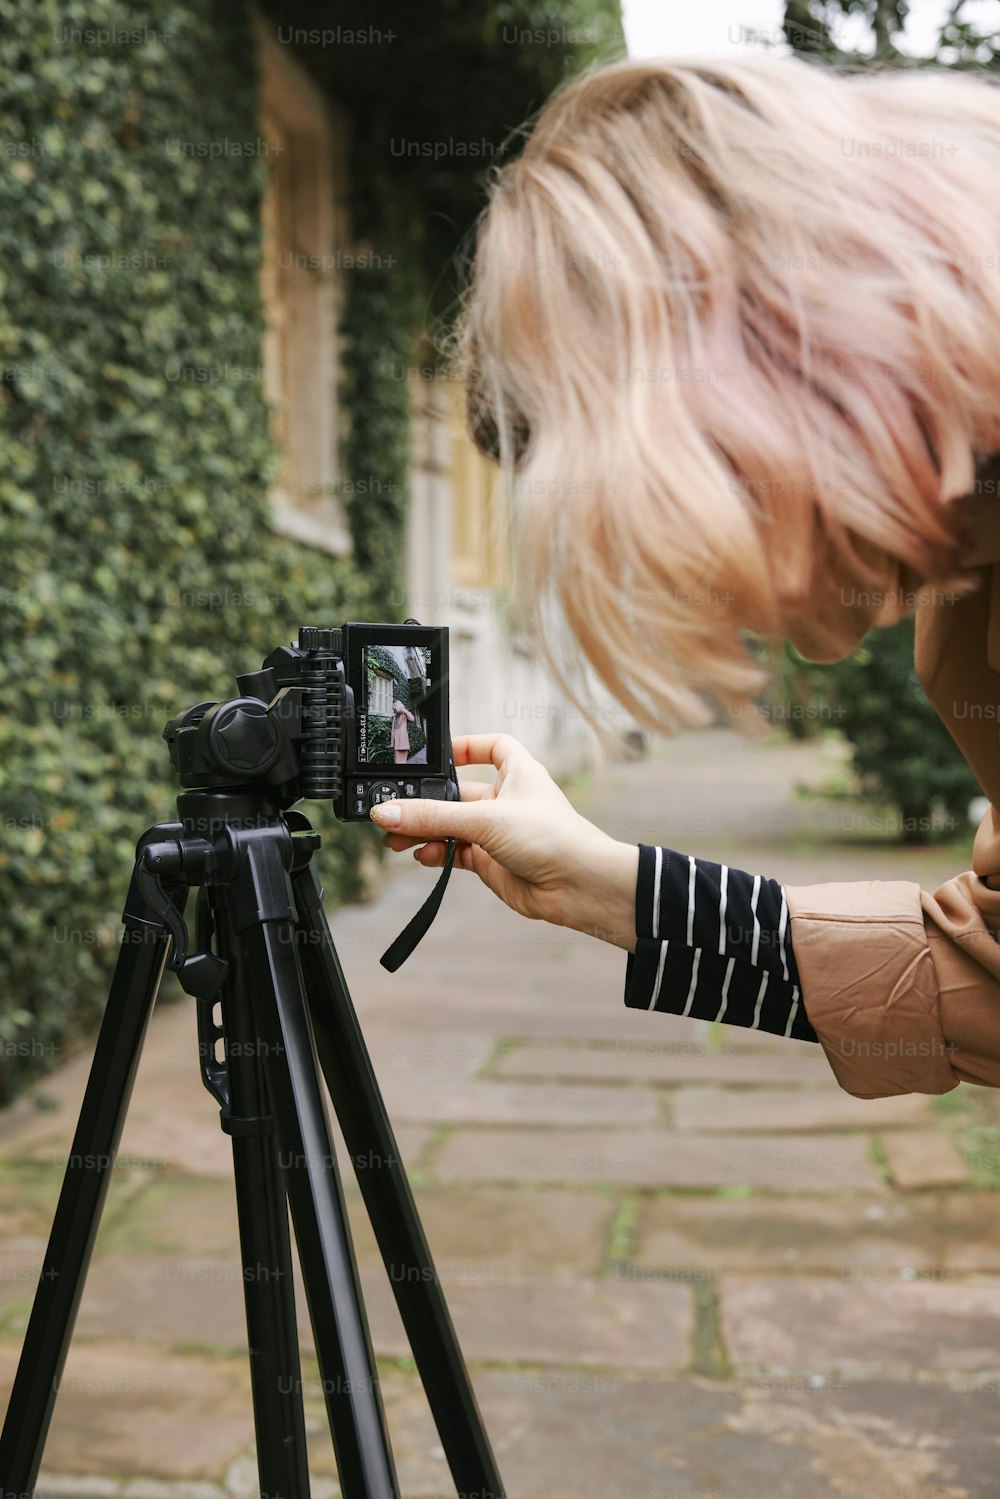 Una mujer tomando una foto con una cámara en un trípode